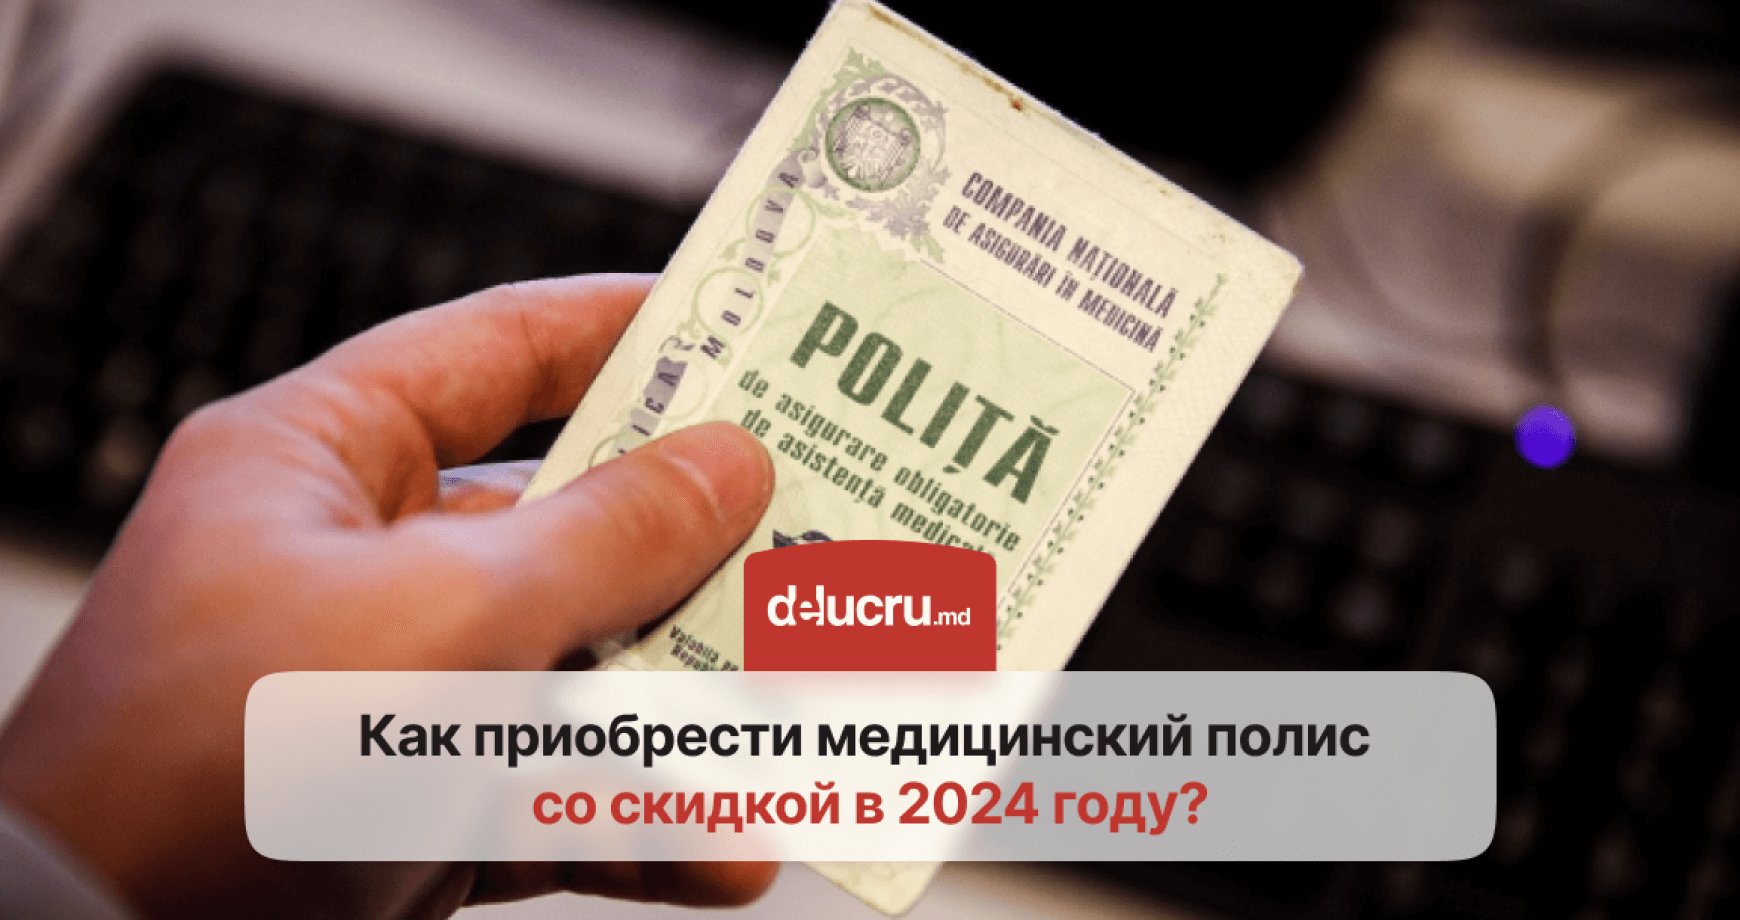 Медицинский полис в Молдове в 2024: как получить медстраховку со скидкой и избежать штрафов?